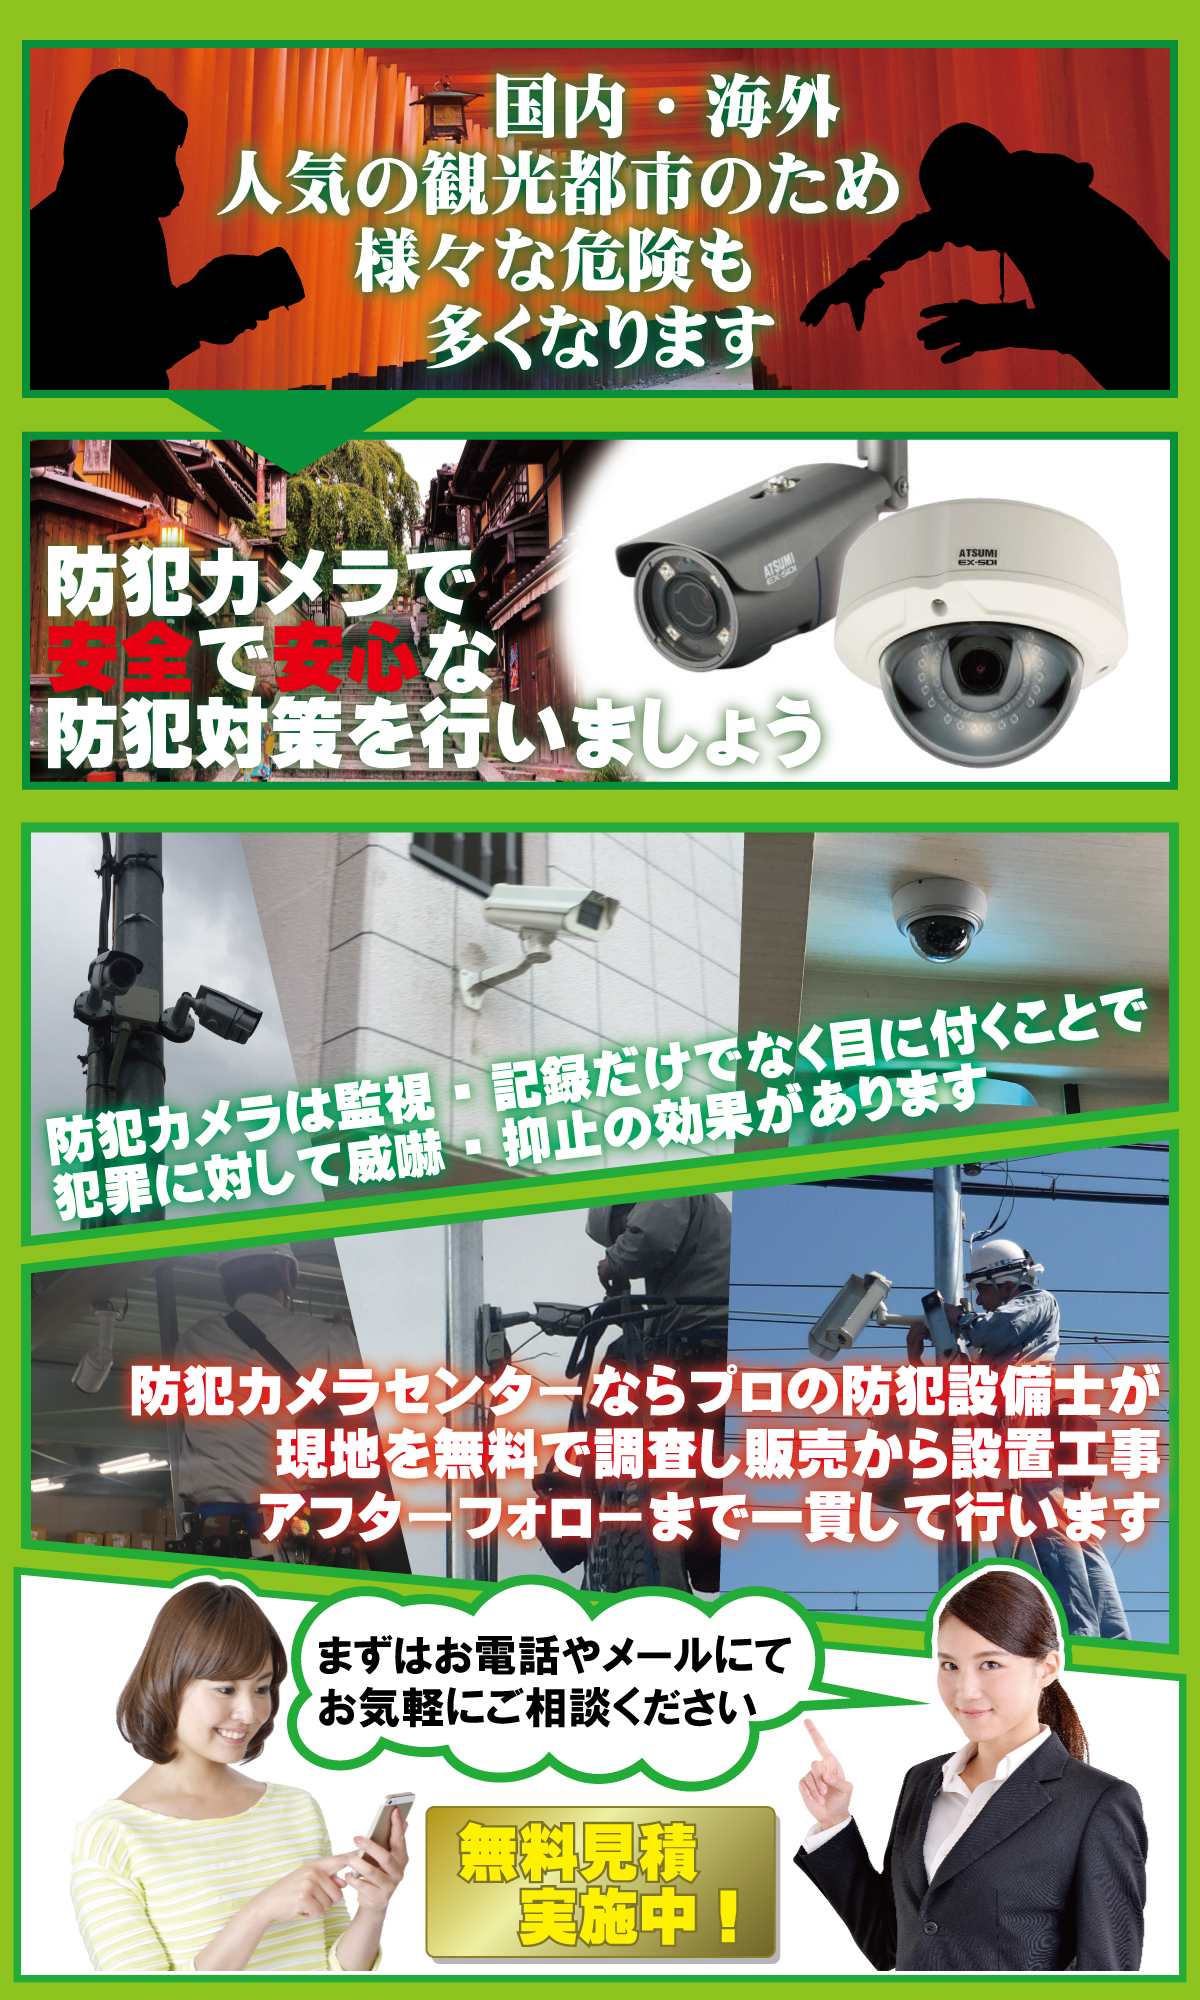 京都・滋賀防犯カメラセンターの防犯カメラ設置について